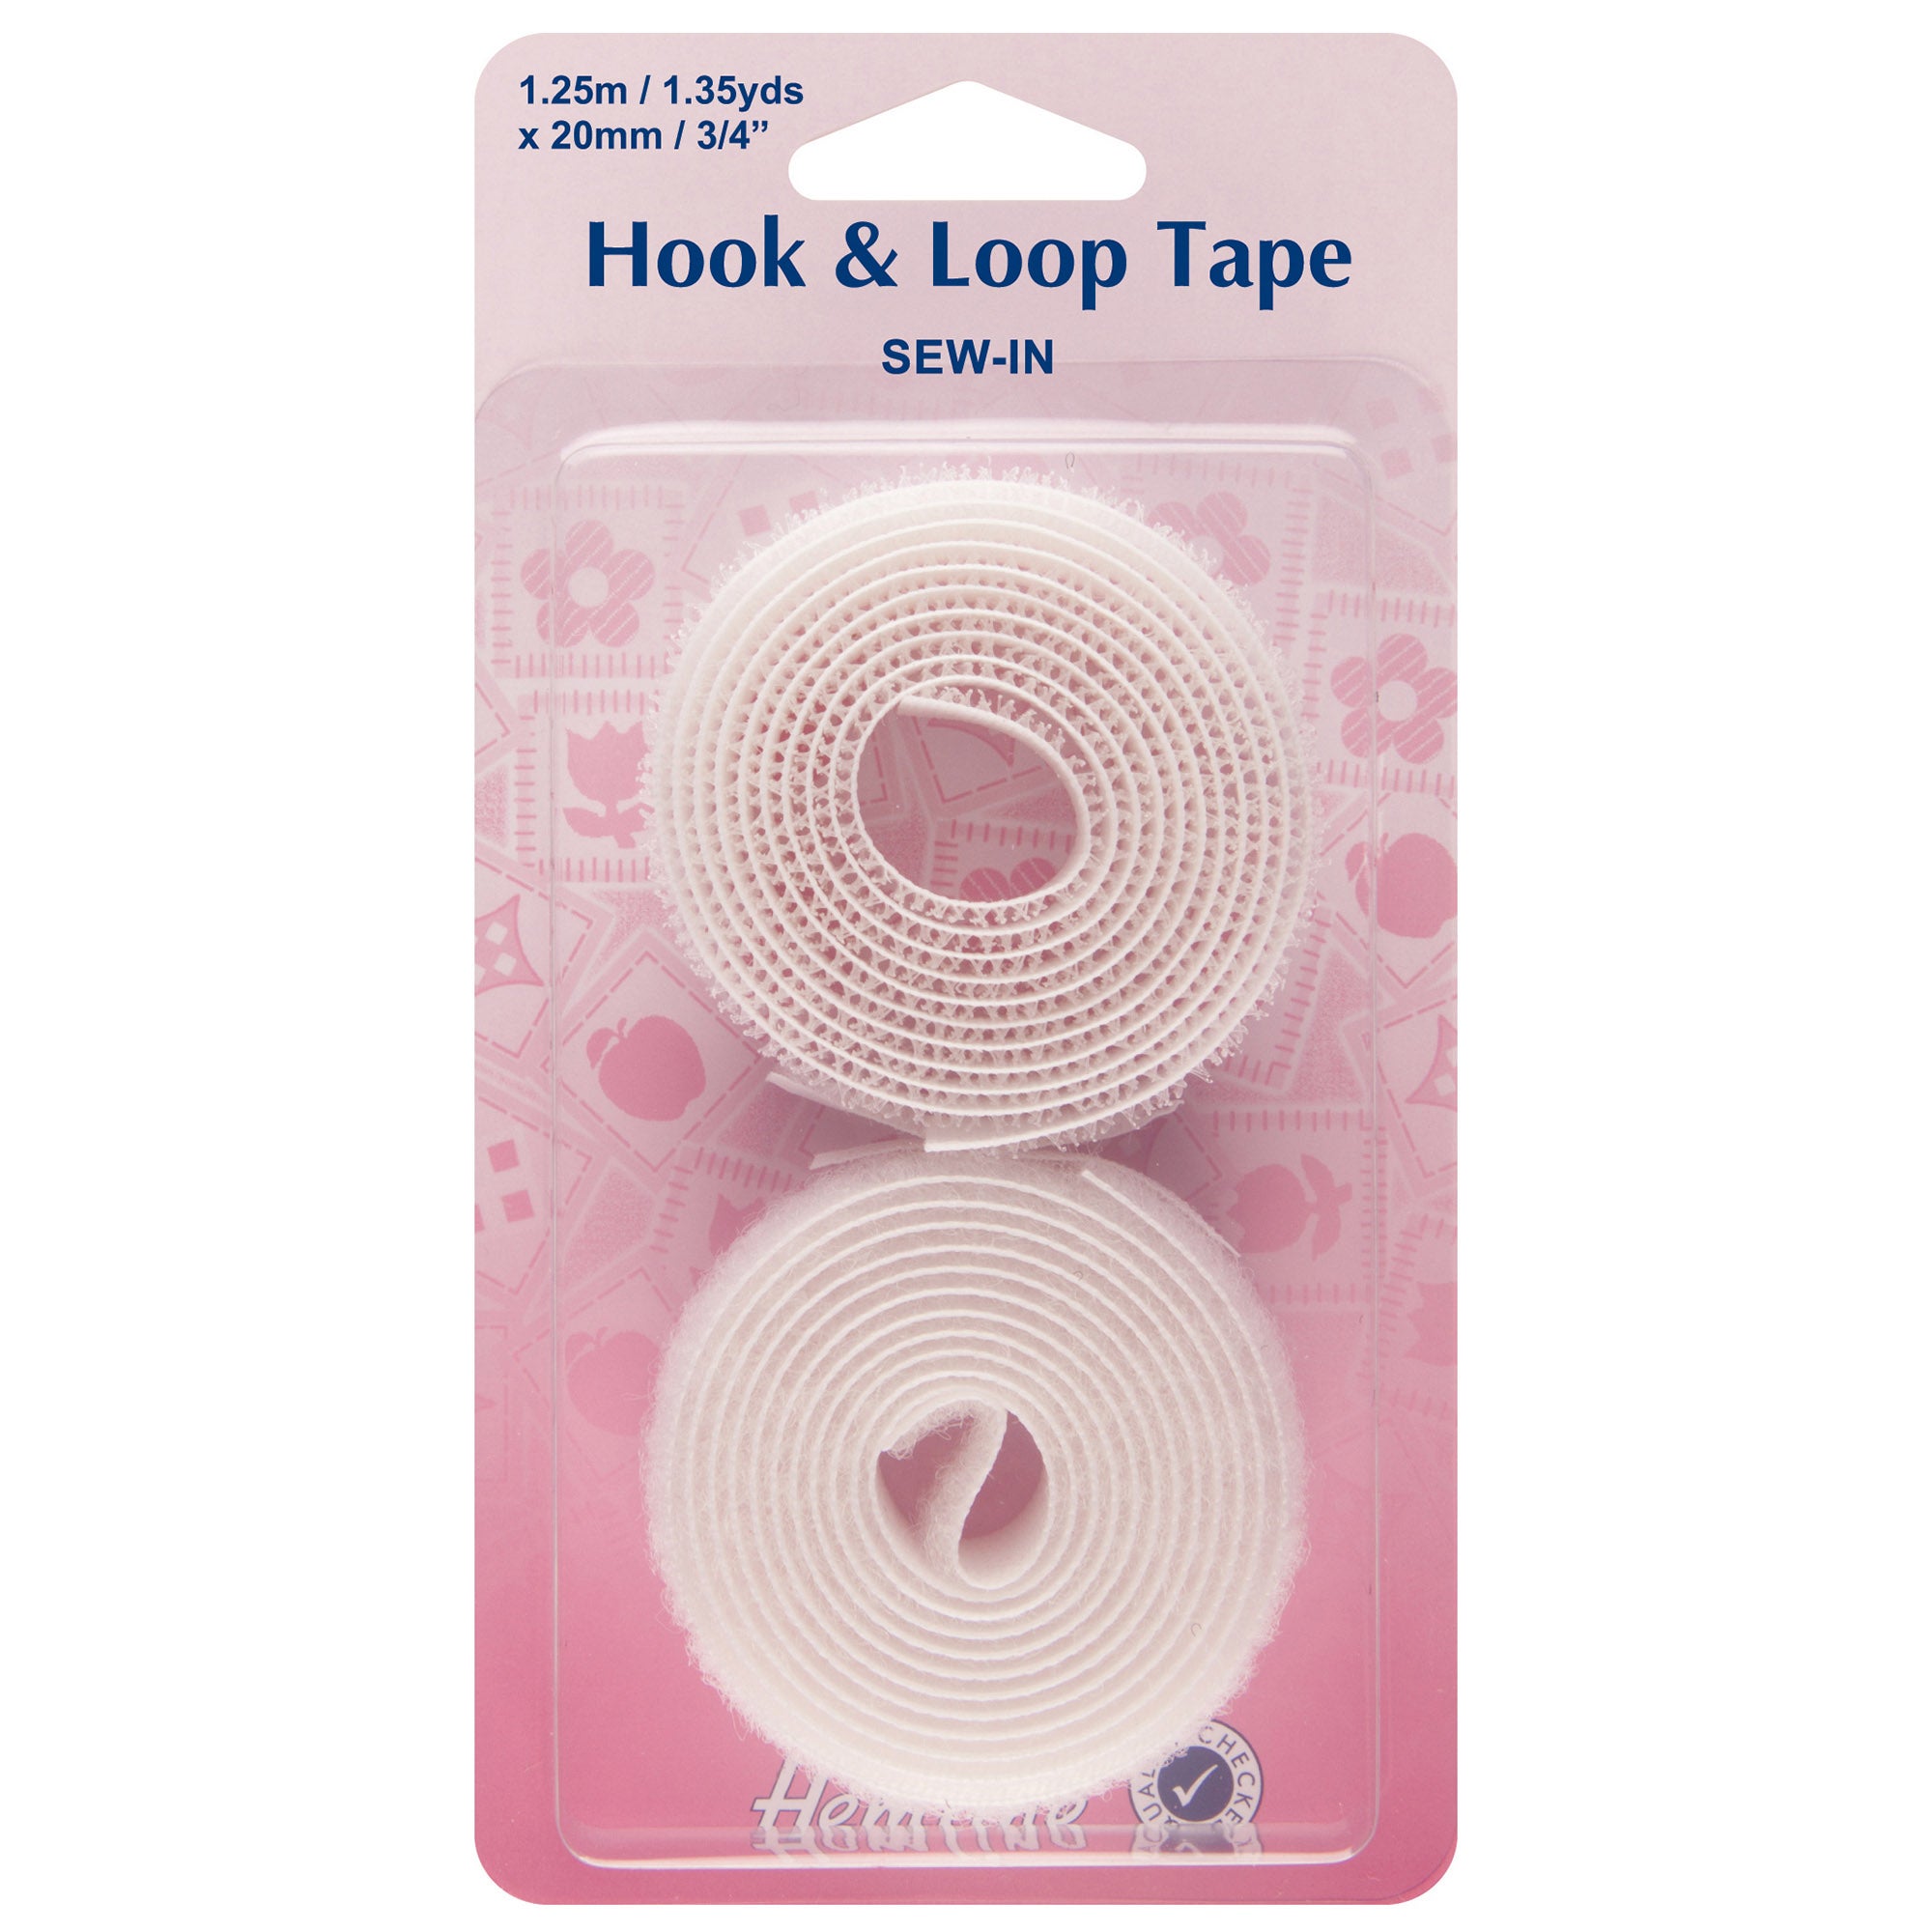 Hemline Sew-In 20mm Hook and Loop Tape